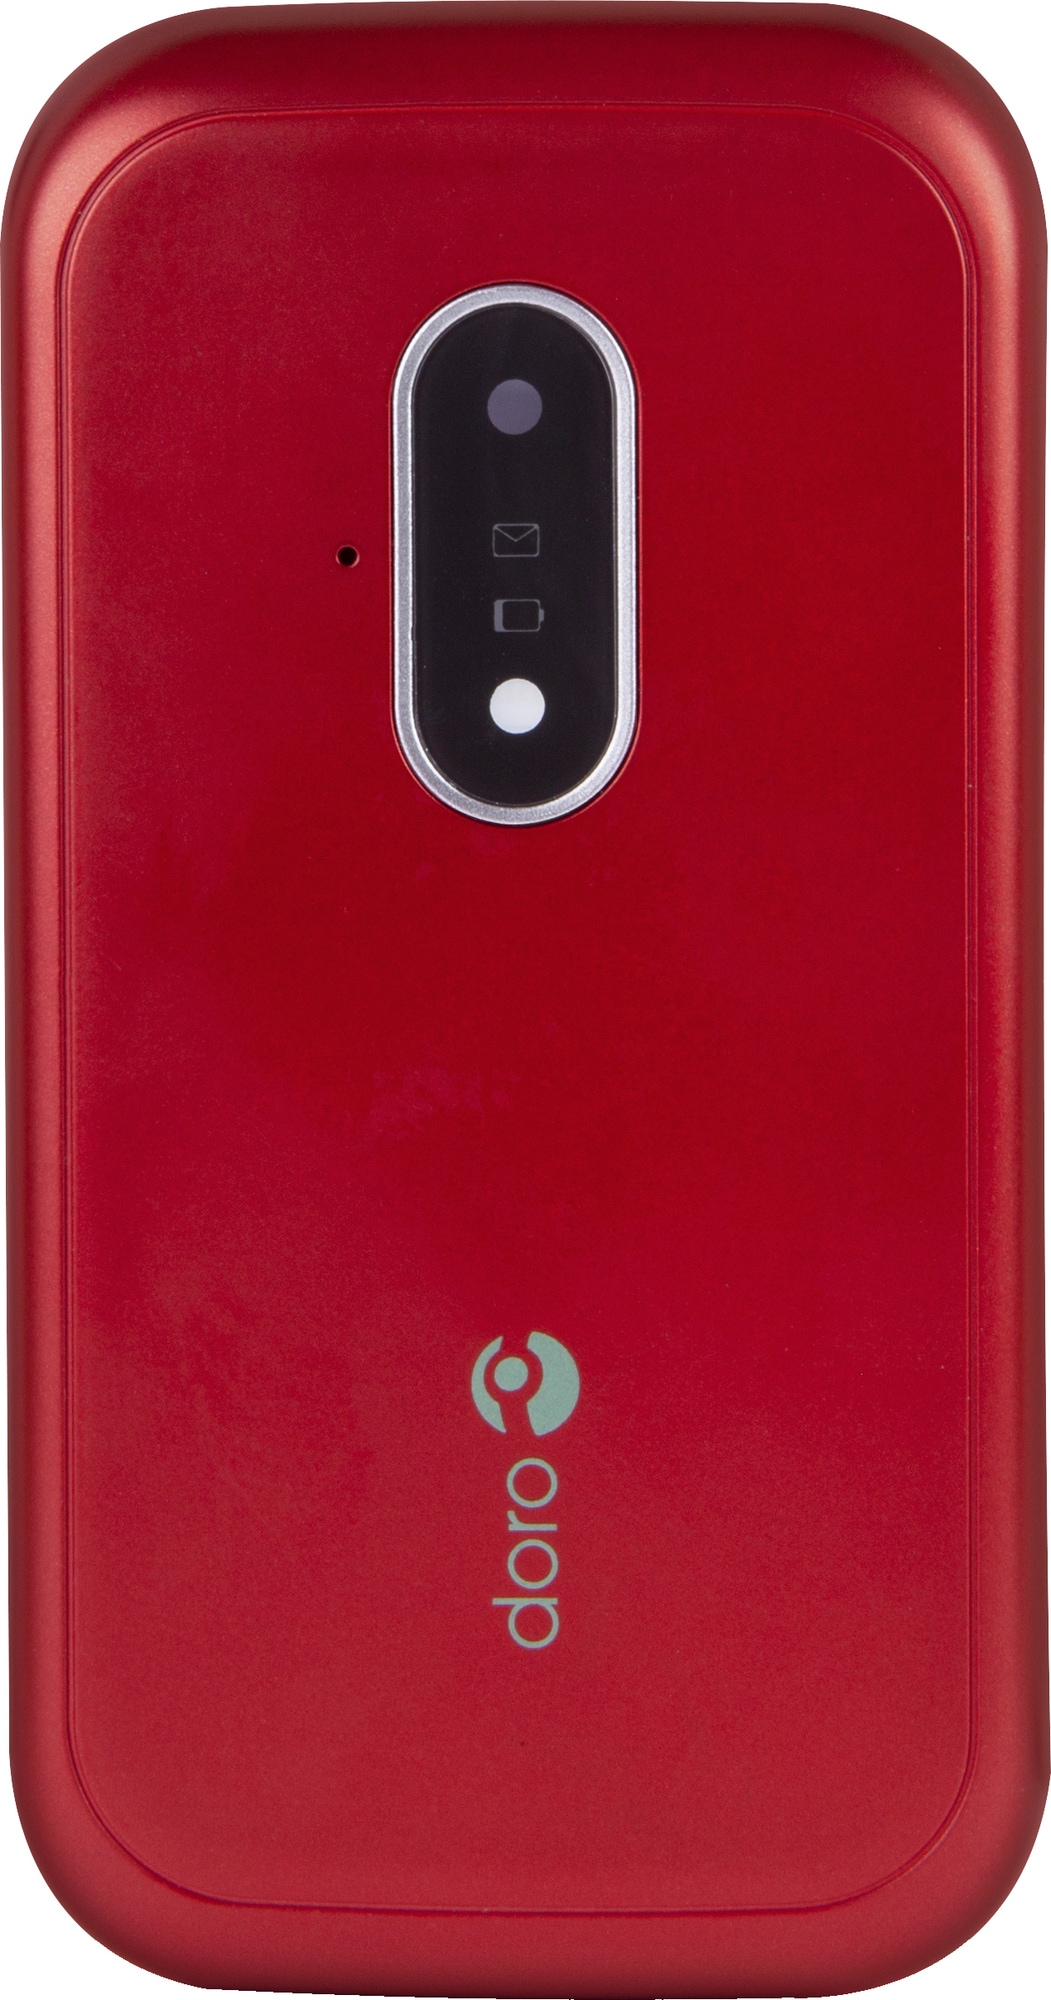 Doro 7031 matkapuhelin (punainen/valkoinen) - Gigantti verkkokauppa